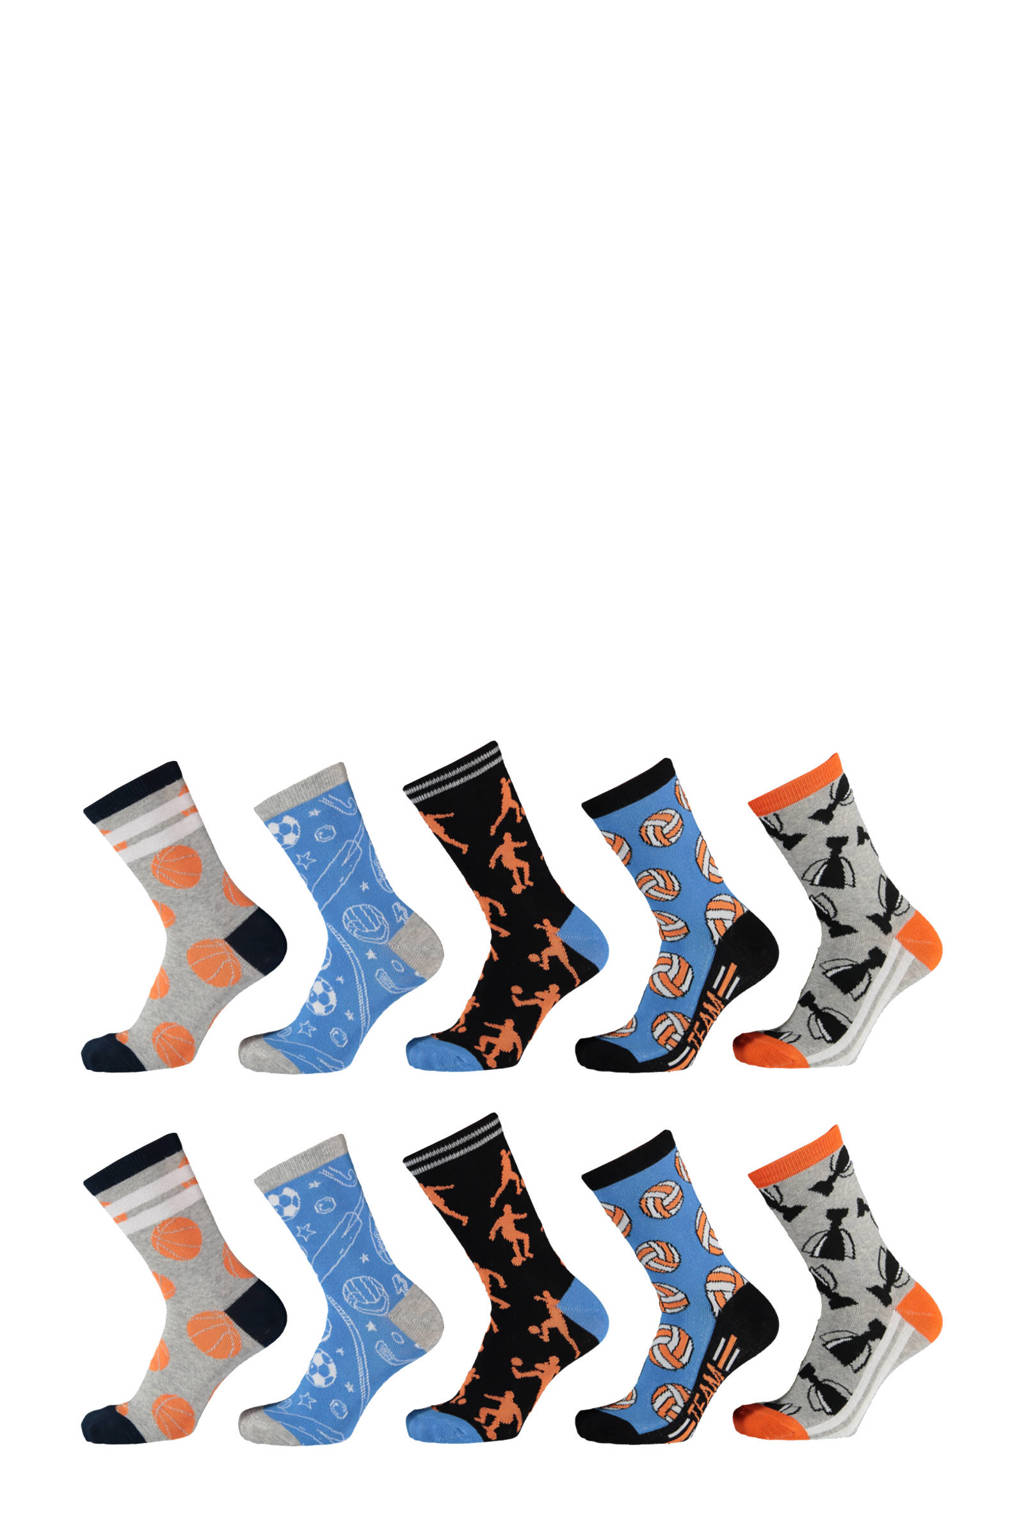 Apollo sokken met all-over-print - set van 10 oranje, oranje/grijs/zwart/lichtblauw